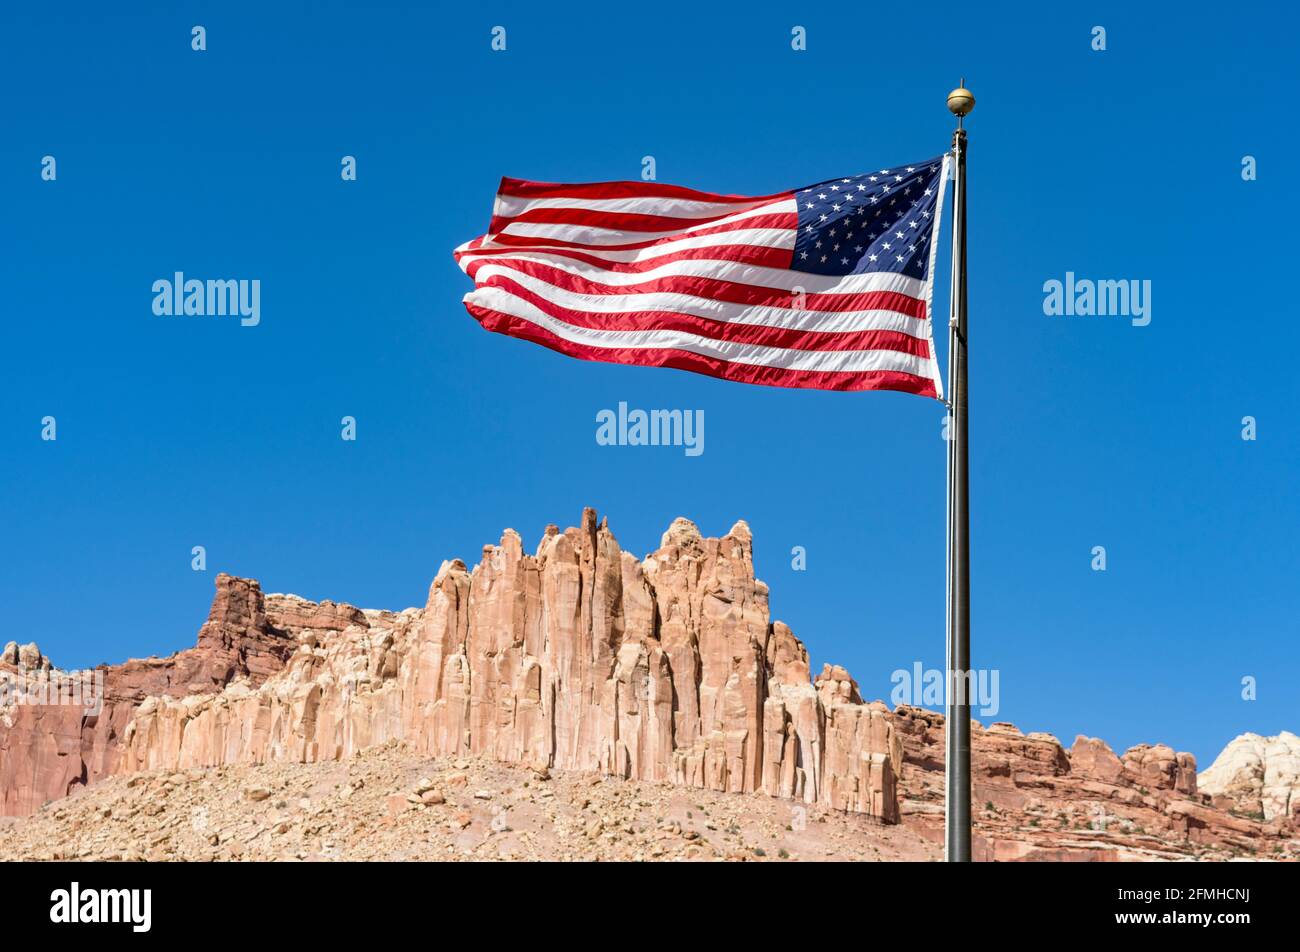 American Flag fliegt im Wind an einem sonnigen Tag, ikonische rote Sandsteinfelsen bilden DIE BURG in der Ferne, Capitol Reef National Park, Utah Stockfoto